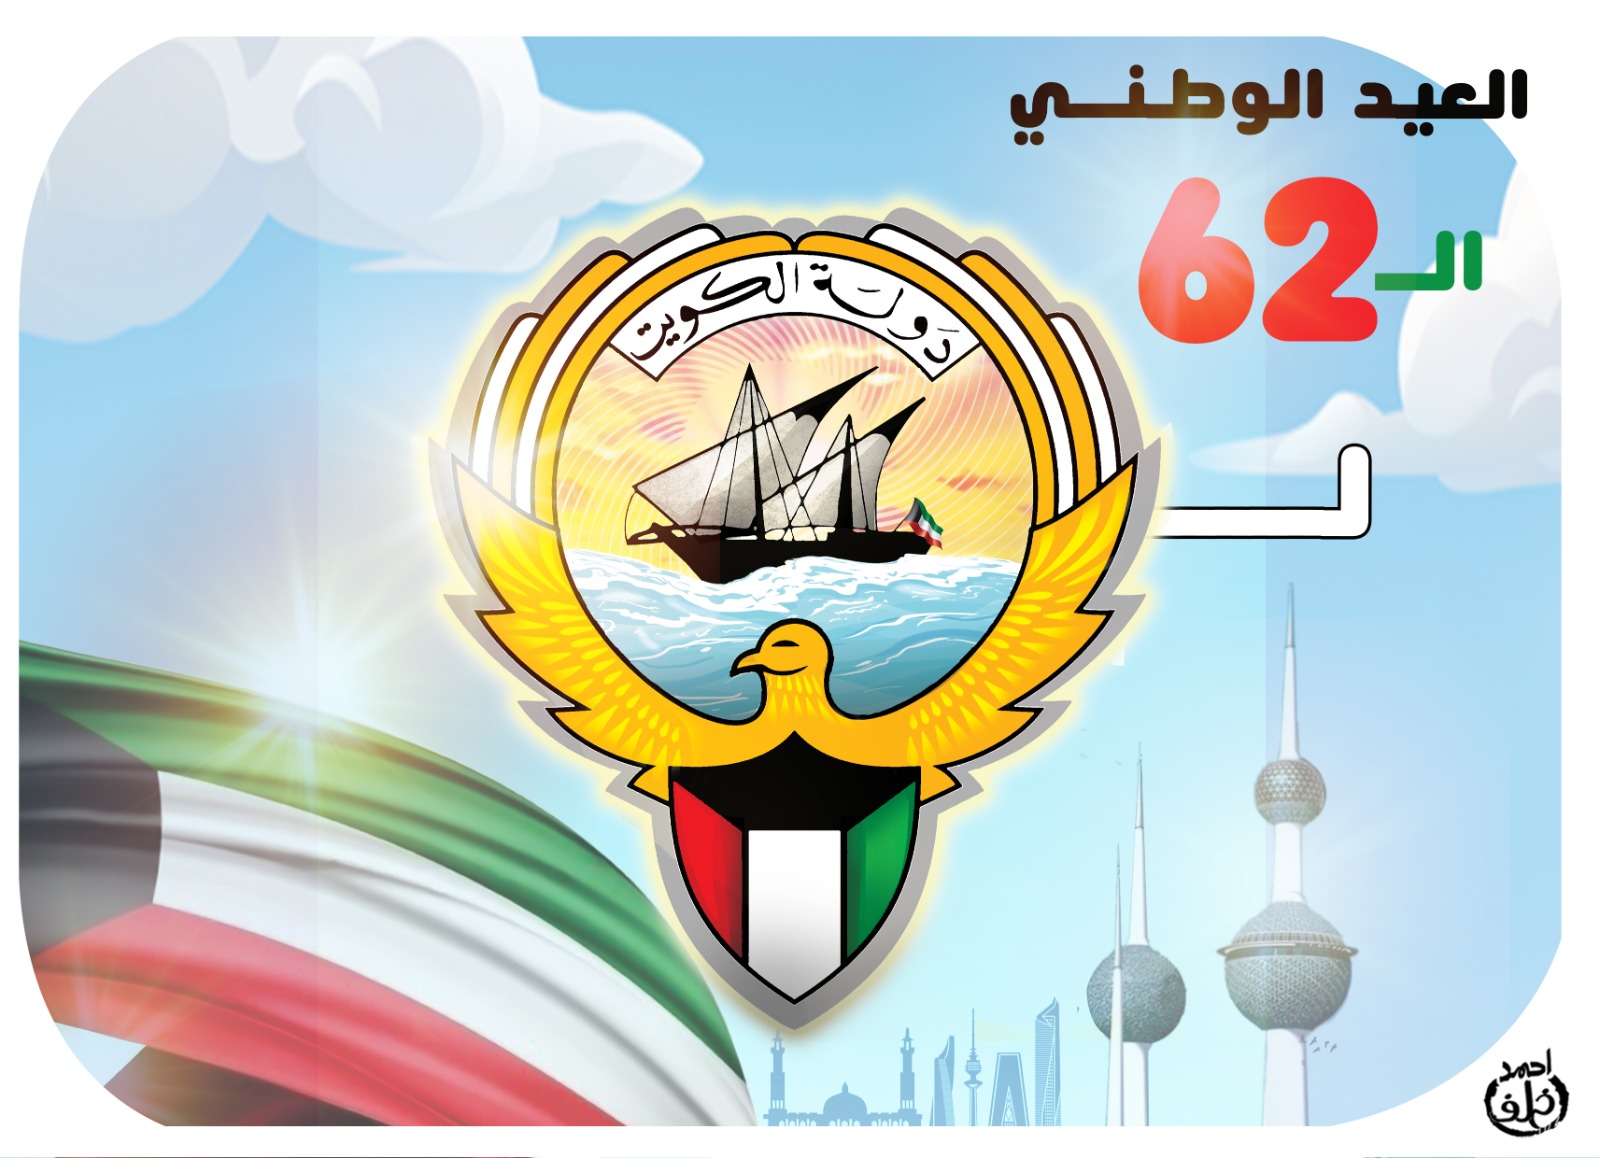 اليوم الوطني الكويتي 62